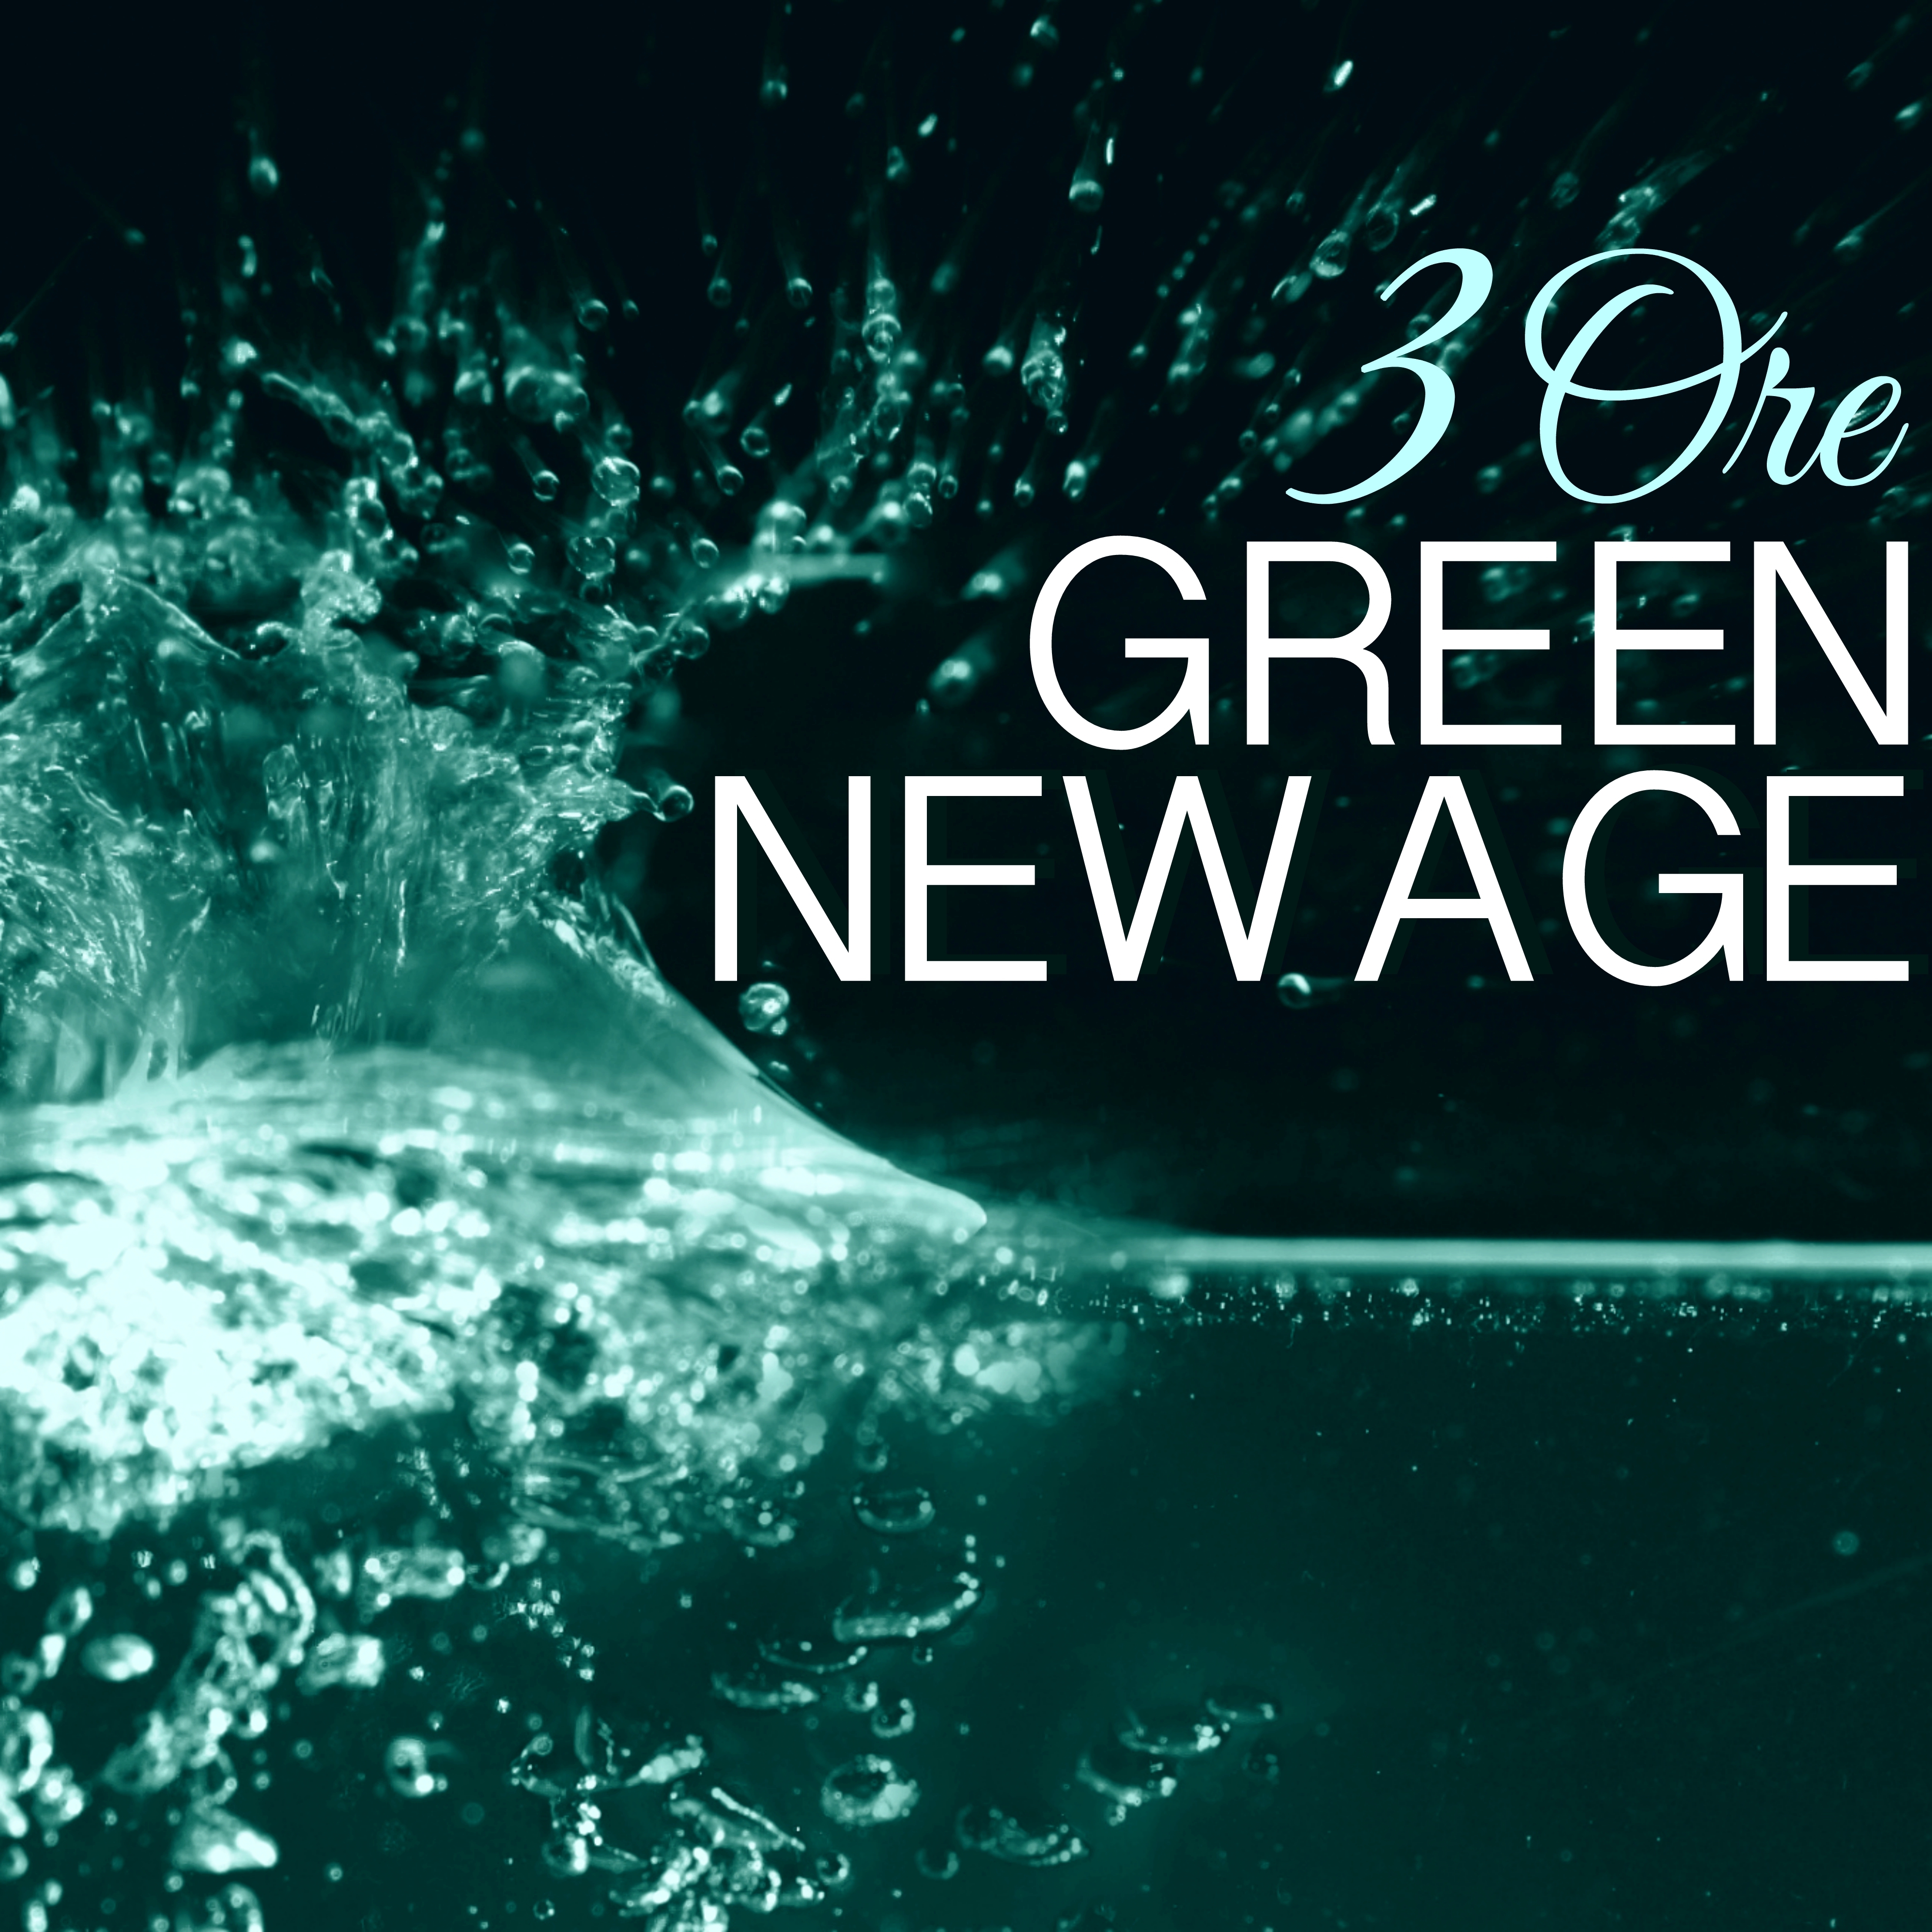 Green New Age - 3 ORE Musica Giardino Zen Buddha per Meditazione, Relax, Spa e Yoga